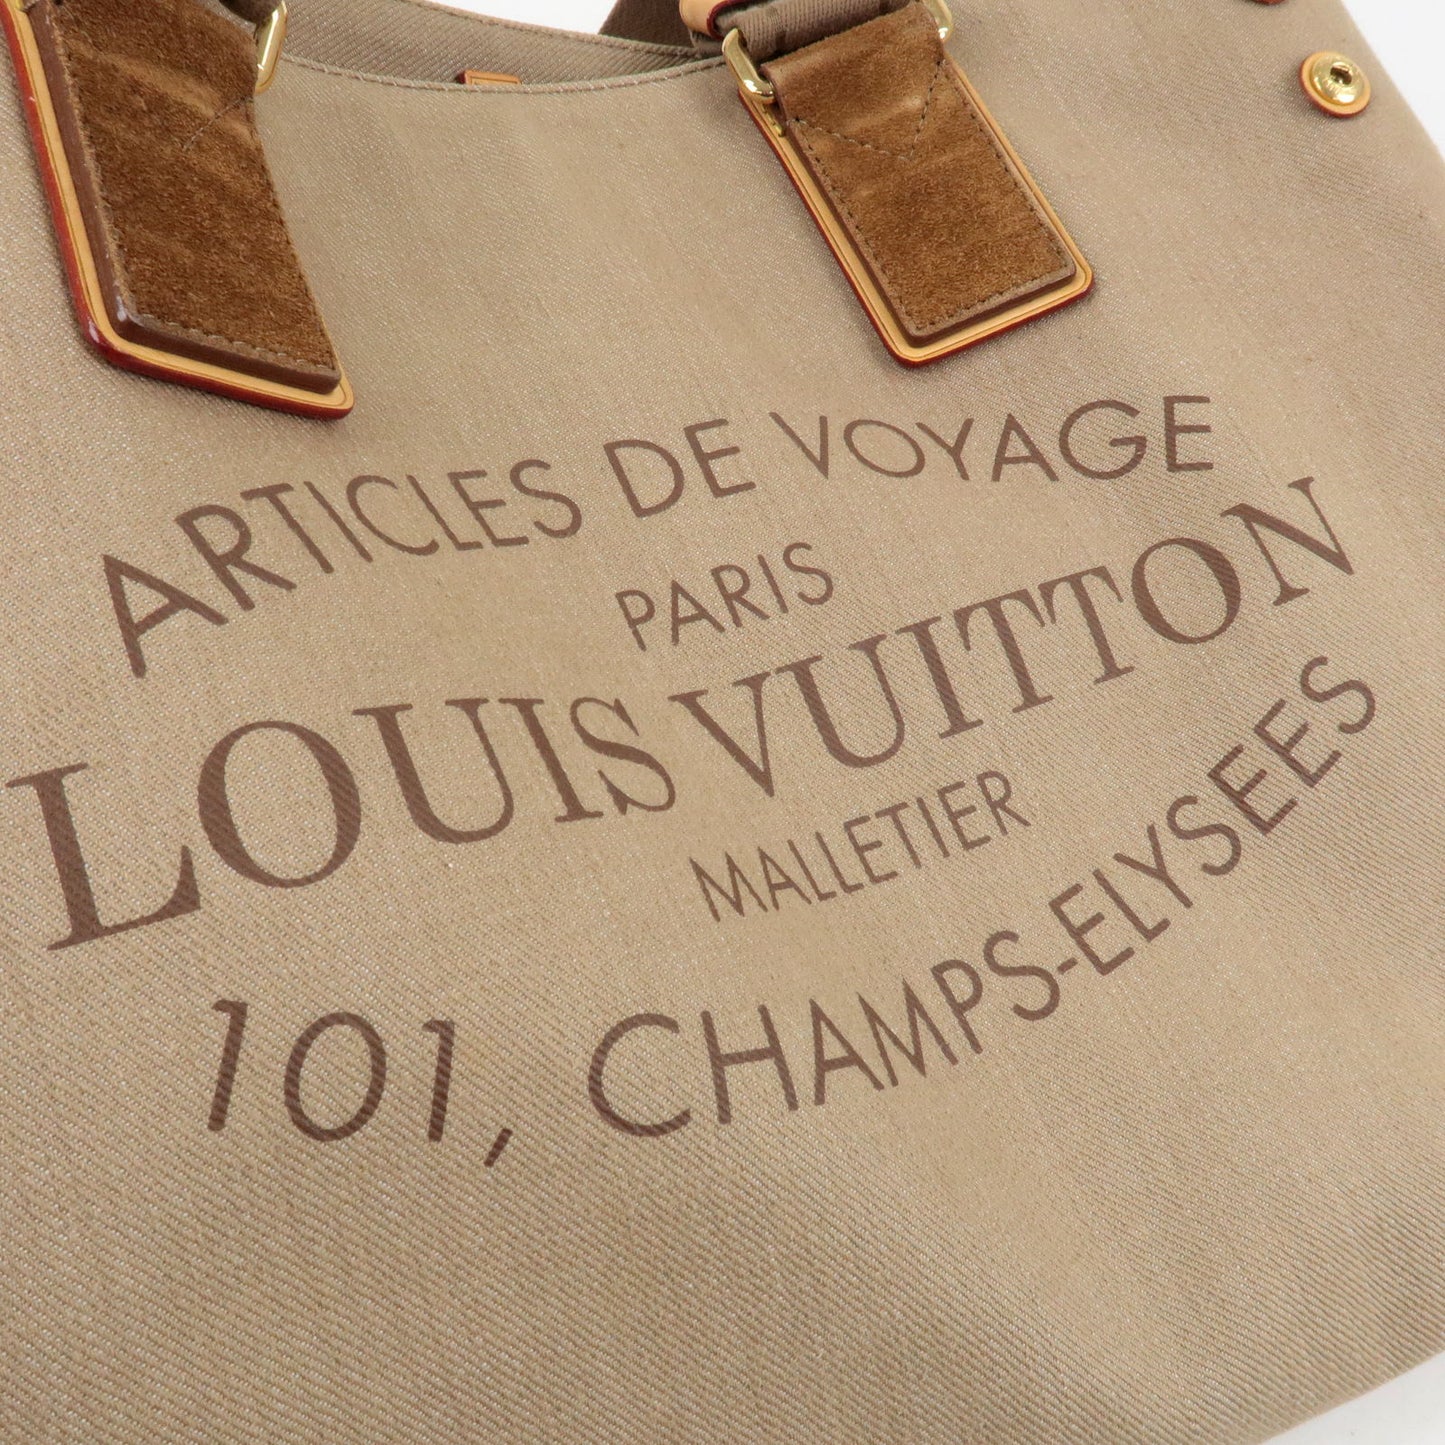 Louis-Vuitton-Plein-Soleil-Cabas-PM-Tote-Bag-Beige-M94144 – dct-ep_vintage  luxury Store